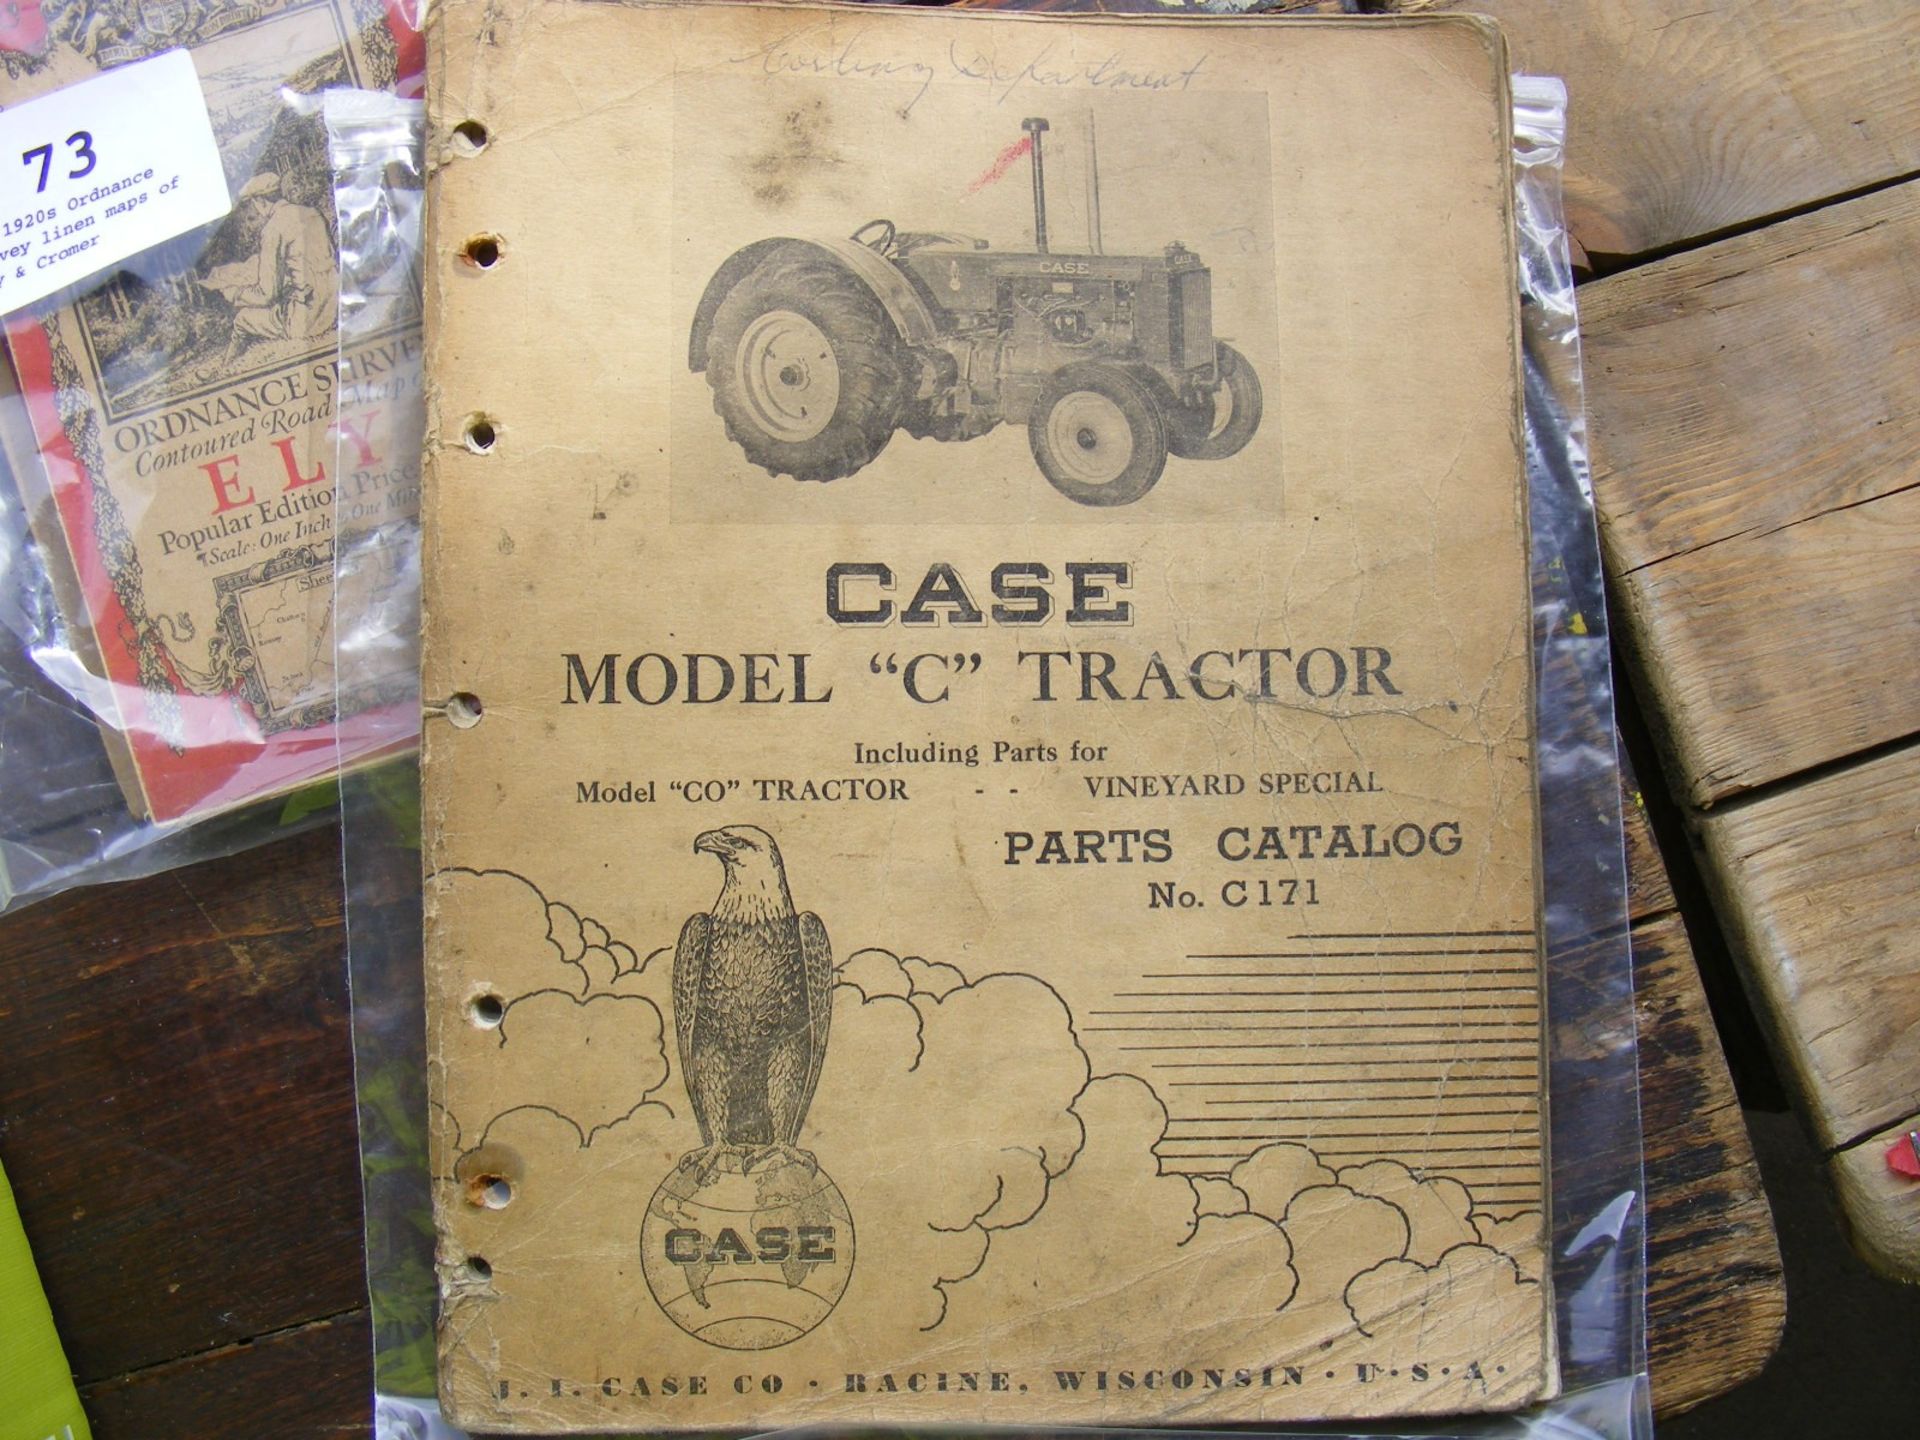 Case Model 'C' 1930s catalogue